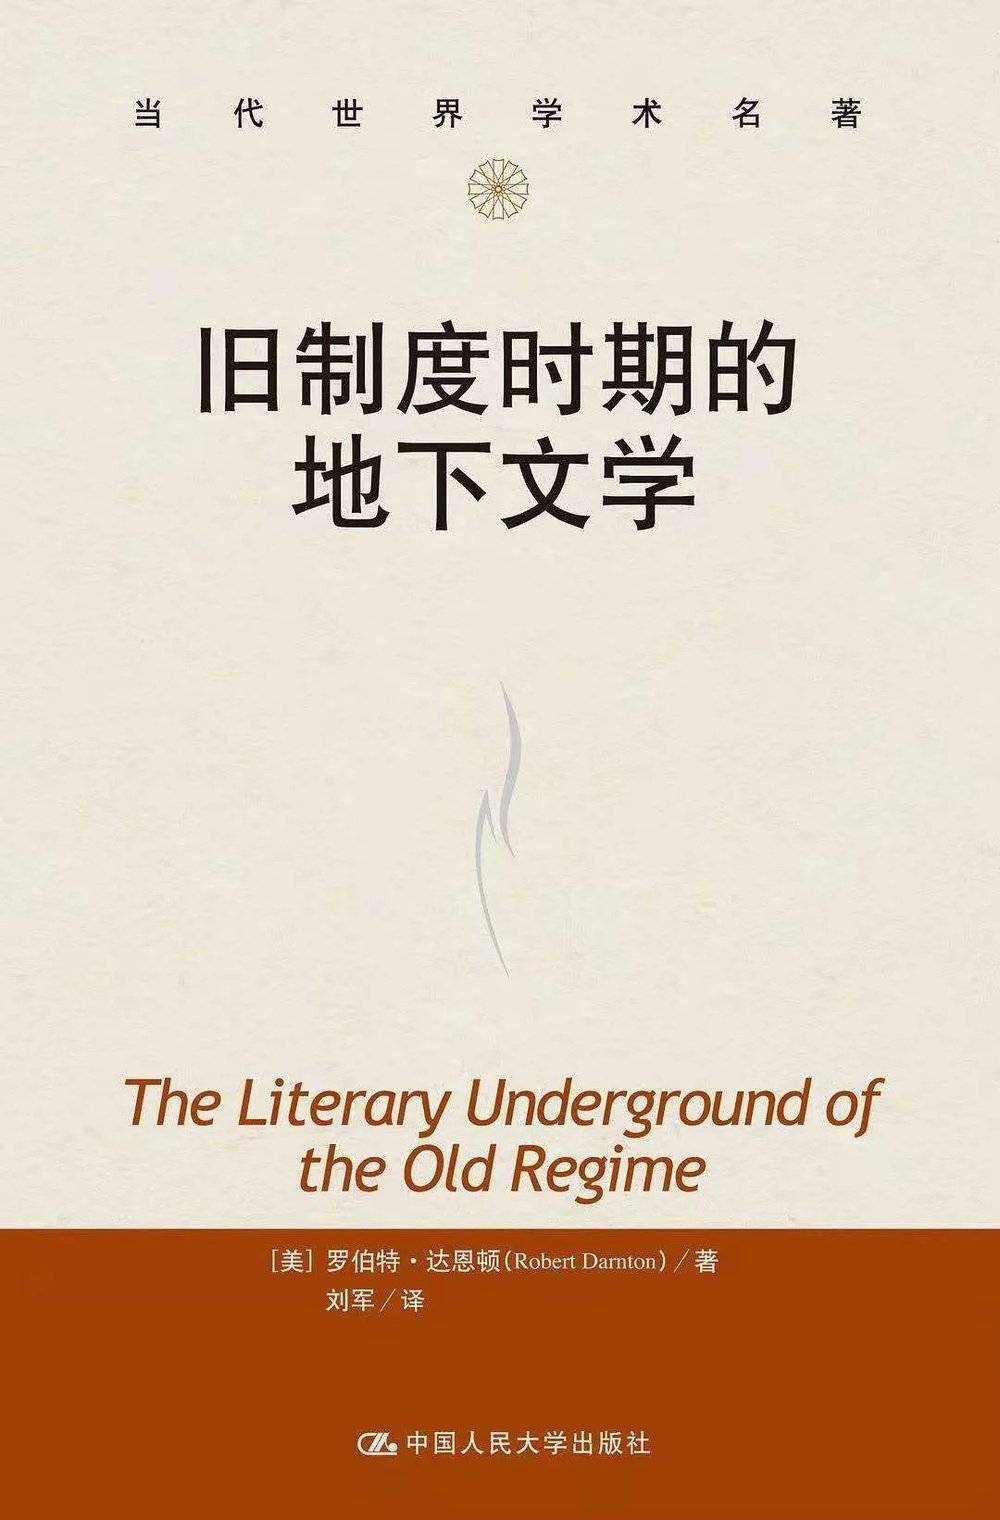 《旧制度时期的地下文学》，[美] 罗伯特·达恩顿 著，刘军 译，中国人民大学出版社，2012-3